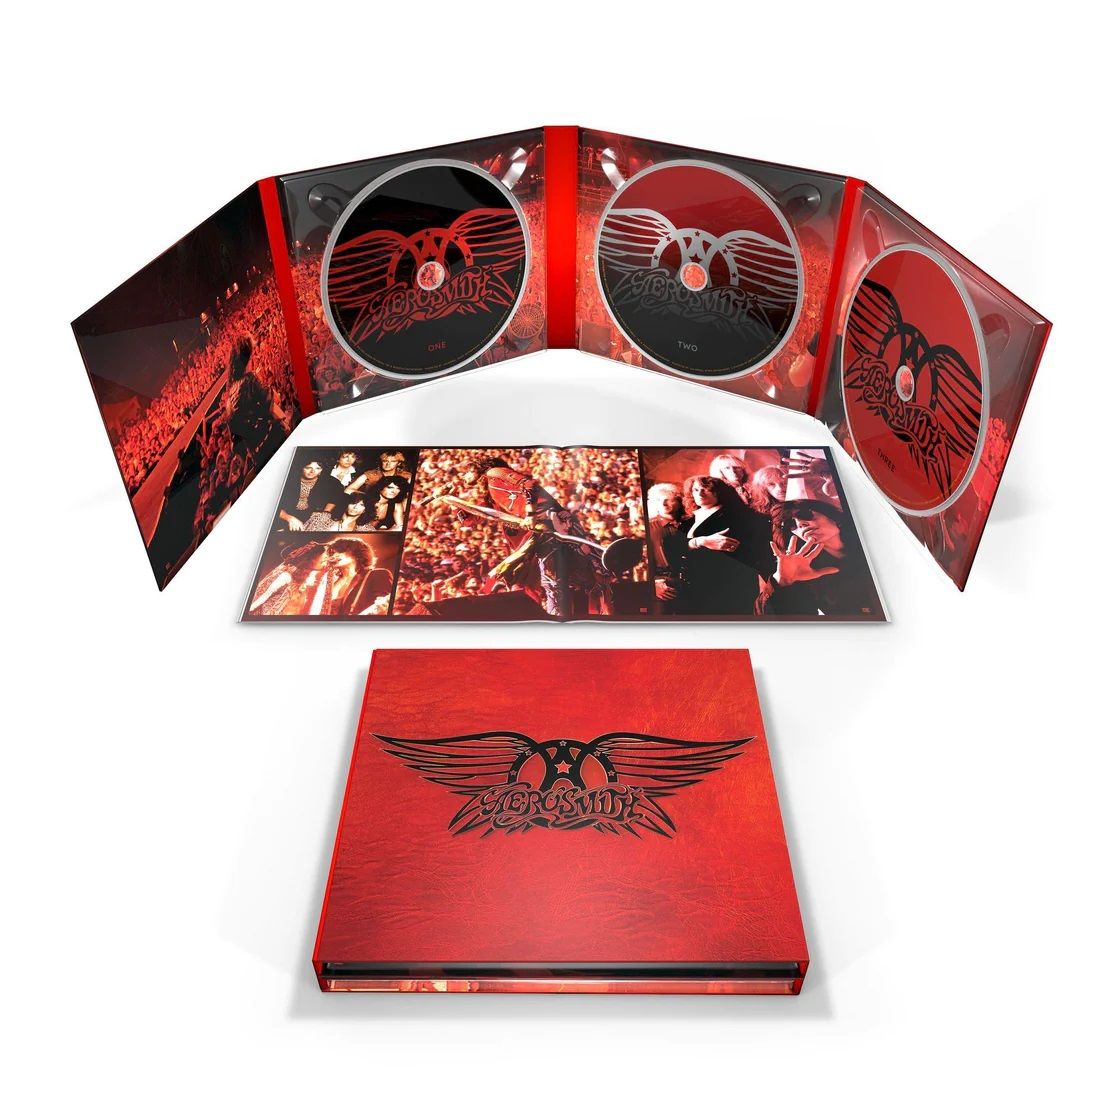 Aerosmith - Greatest Hits (Expanded Ed. 3CD) - CD - New